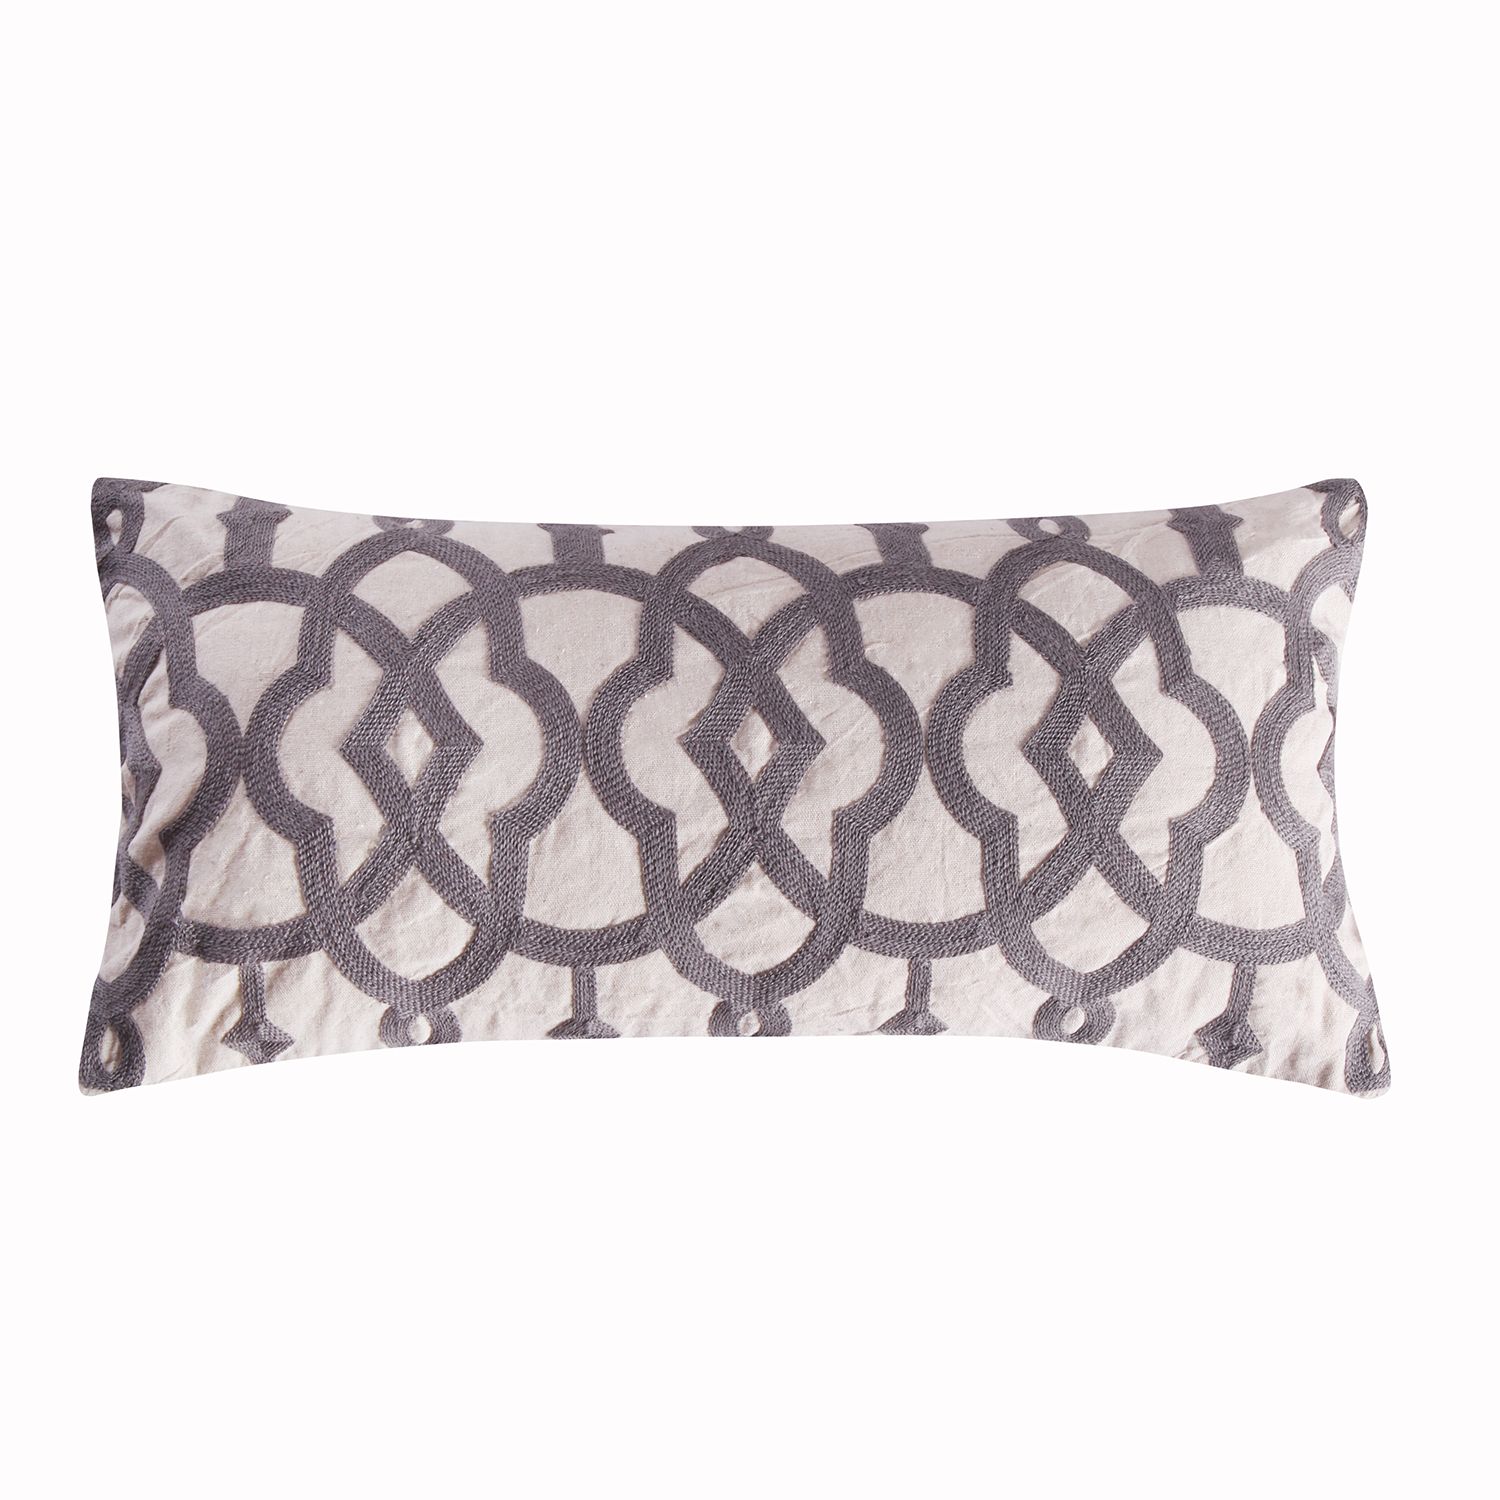 Image for Levtex Home Ojai Stripe Linen Oblong Throw Pillow at Kohl's.